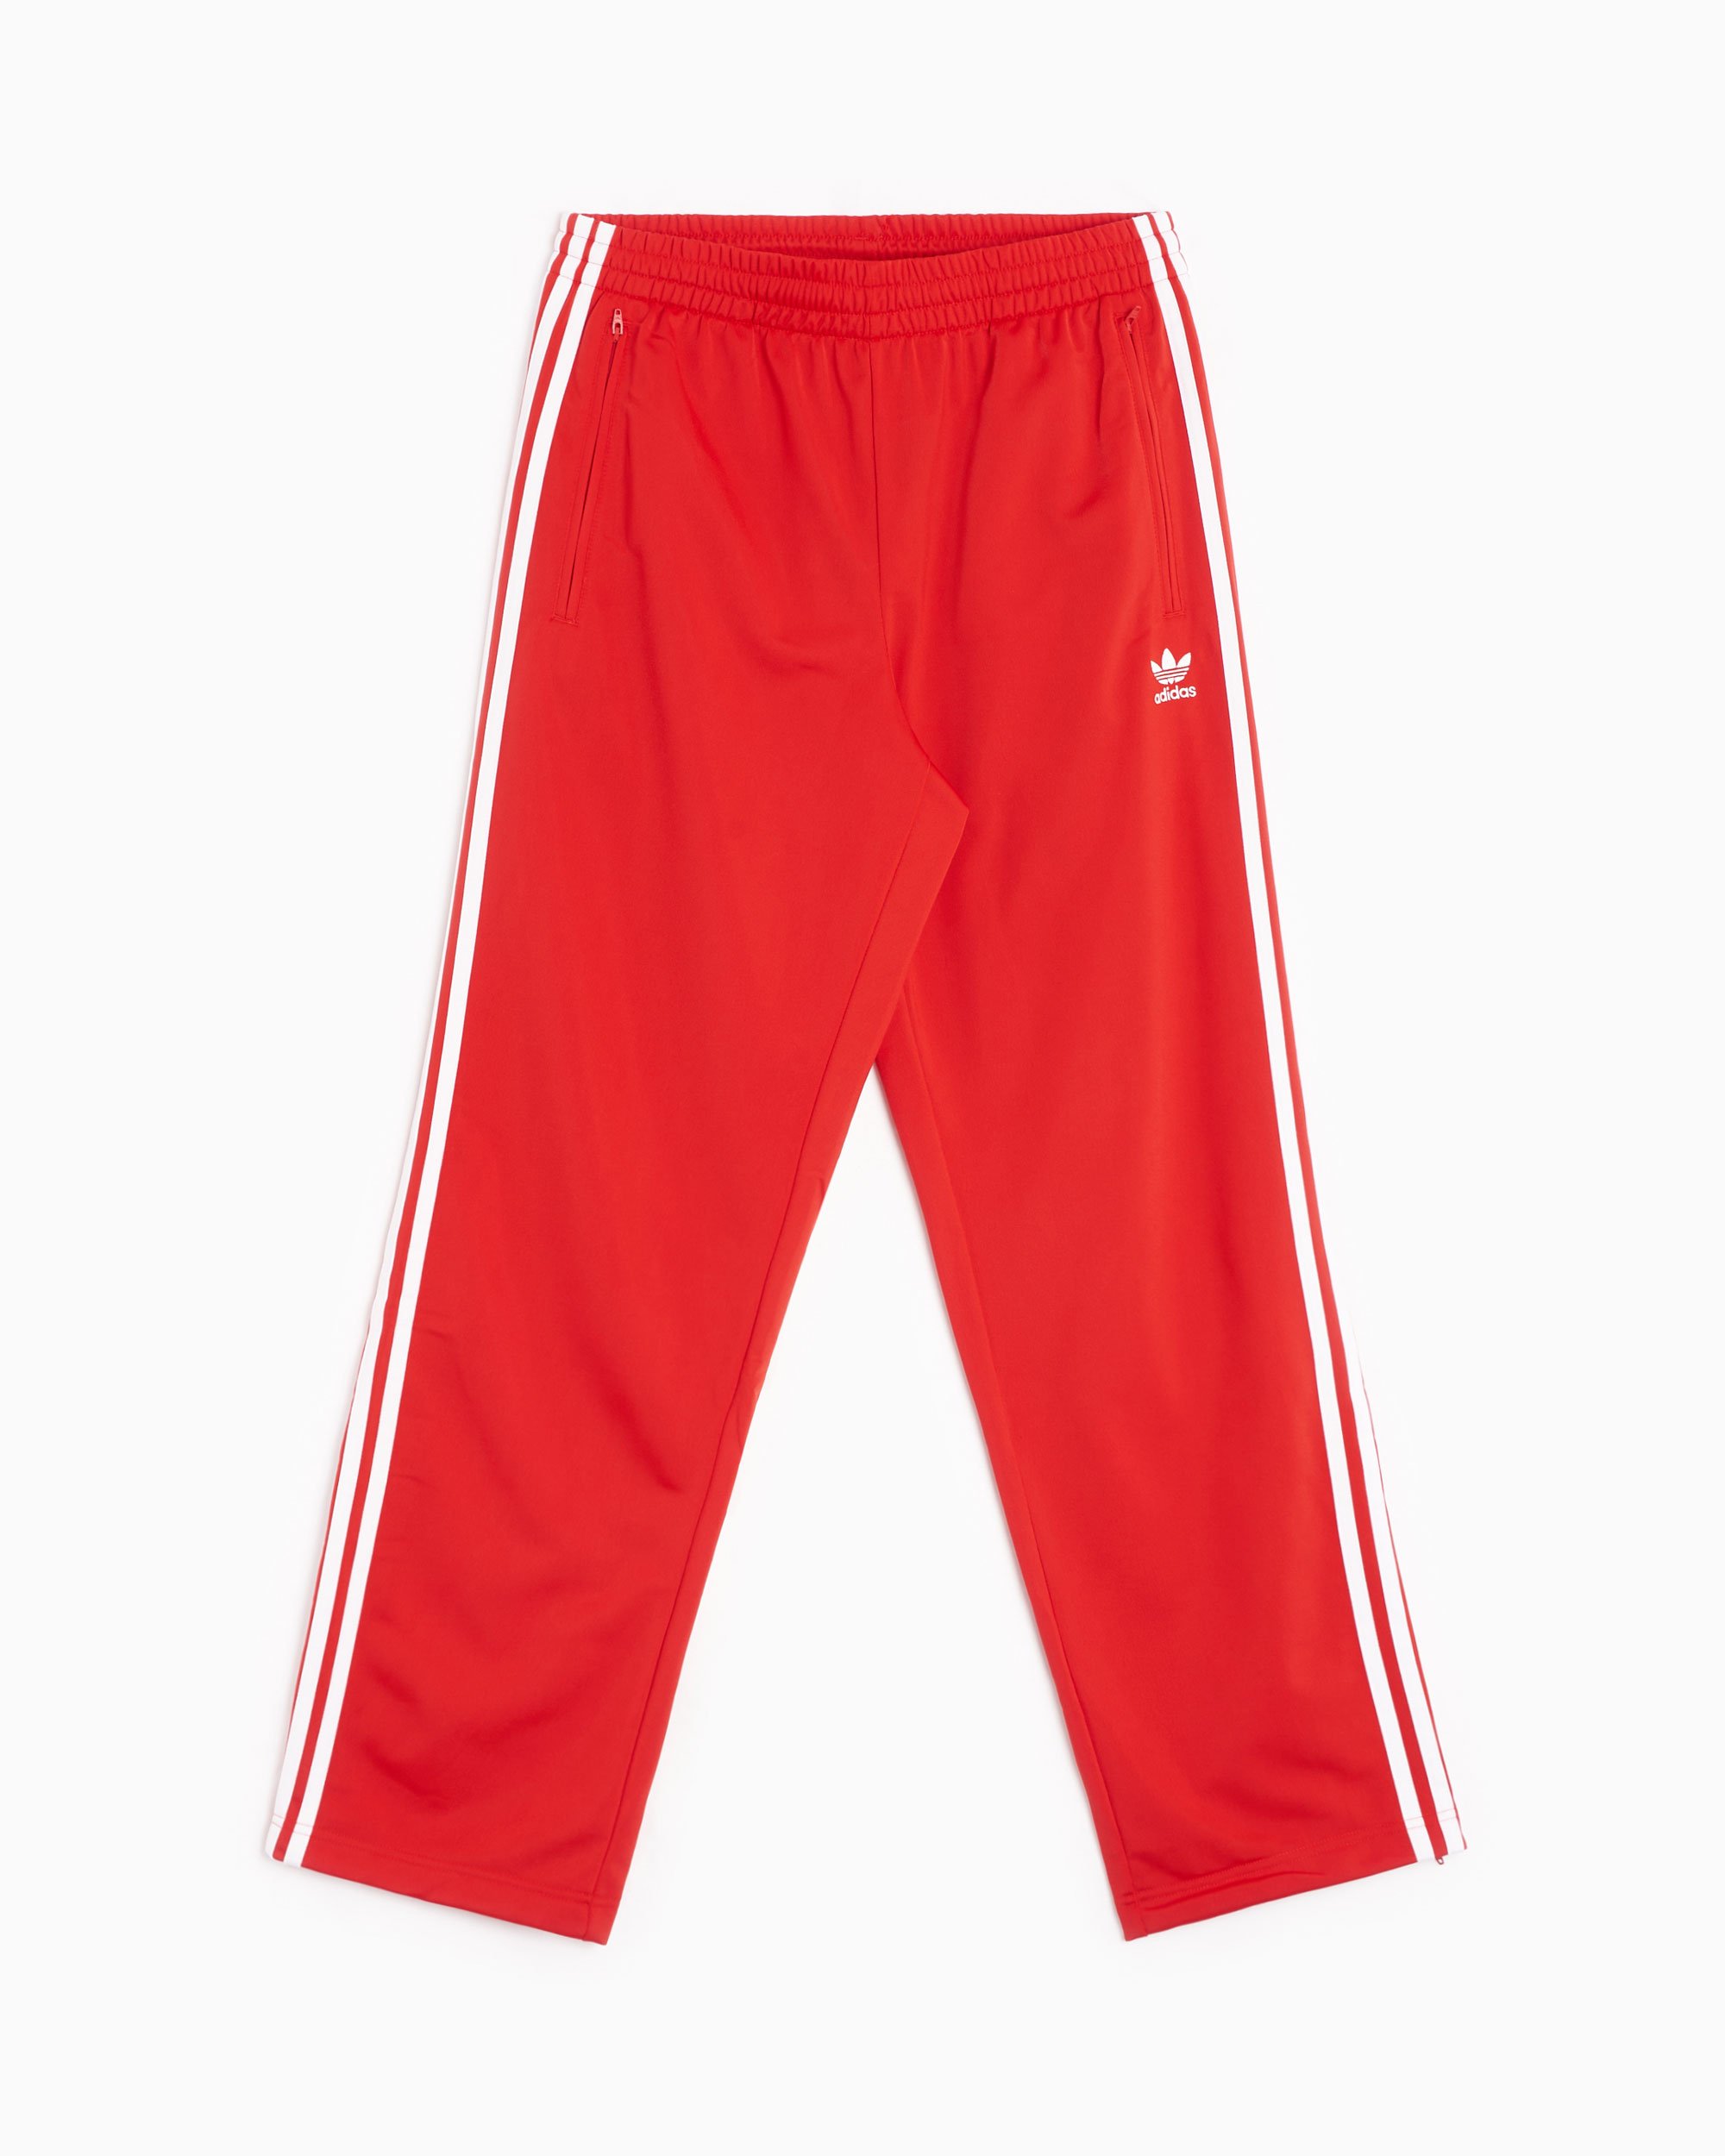 adidas Originals Adicolor Classics Firebird Men's Track Pants